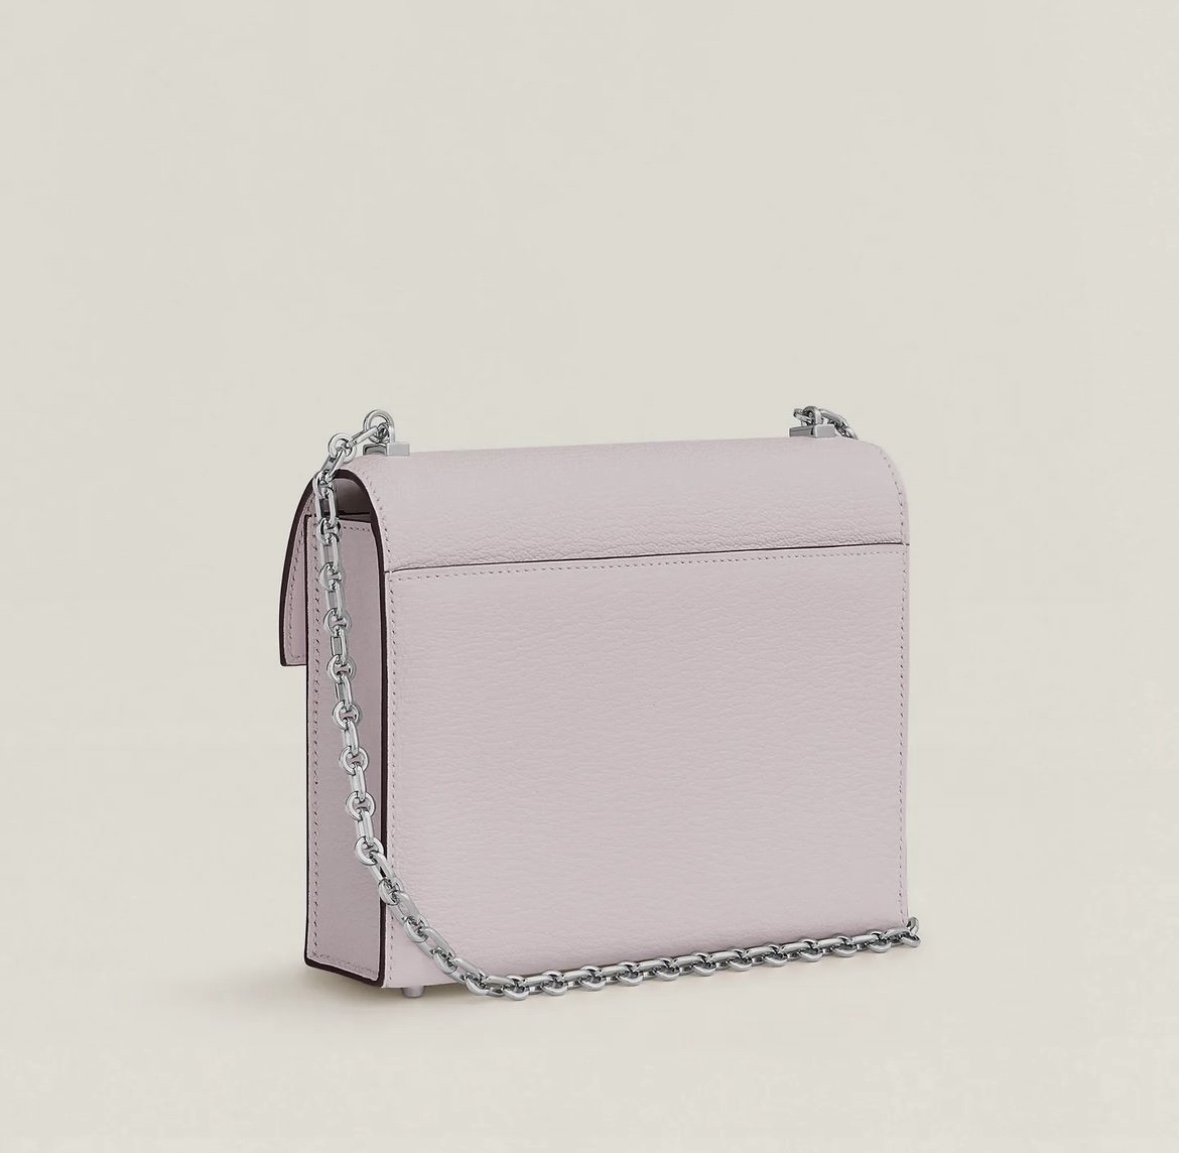 愛馬仕女包價格與圖片最新款大全 Hermès Verrou Chaine mini CK09 Mauve Pâle